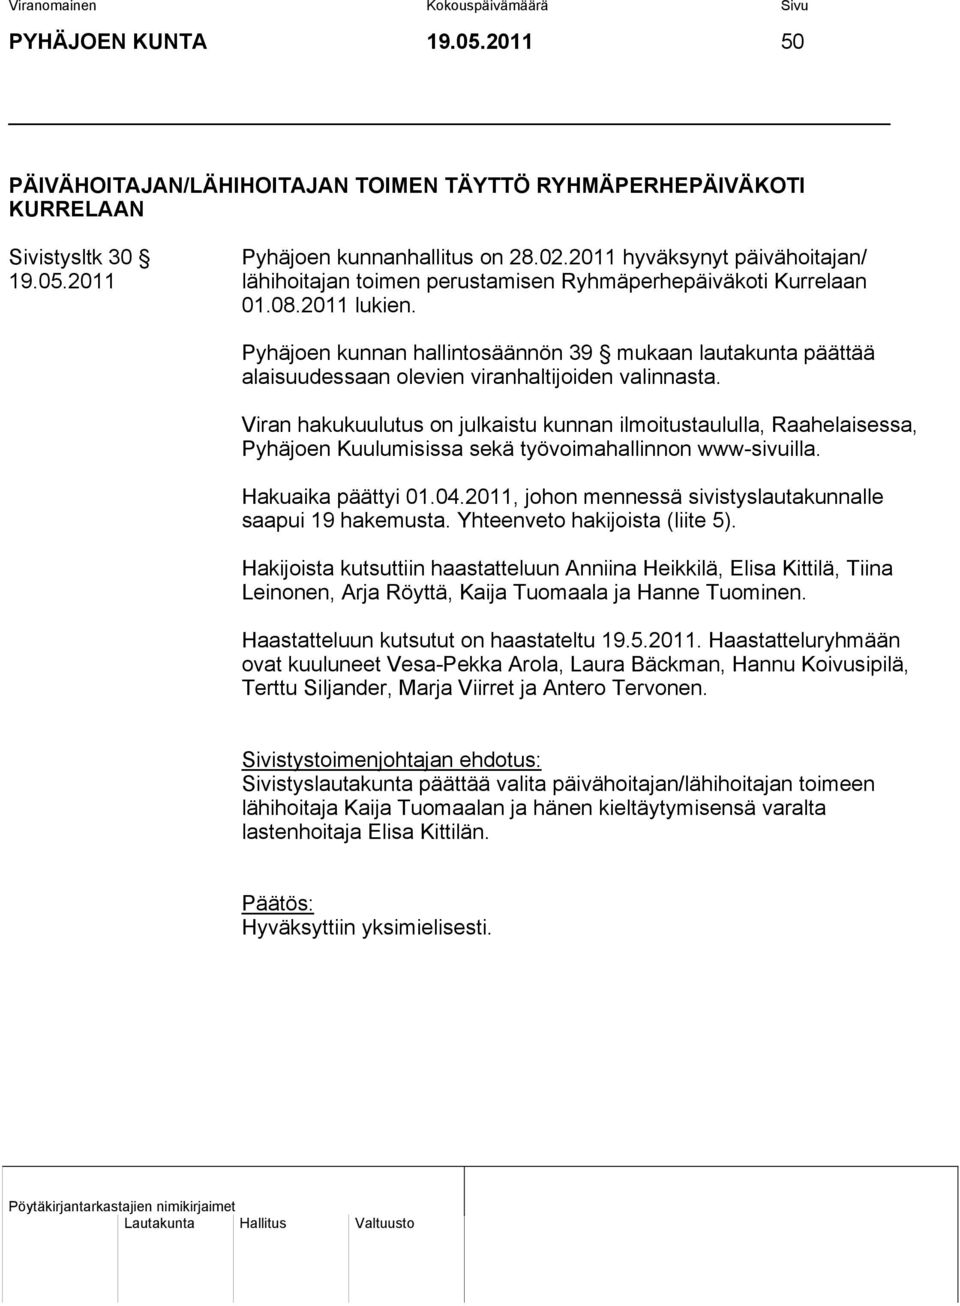 Viran hakukuulutus on julkaistu kunnan ilmoitustaululla, Raahelaisessa, Pyhäjoen Kuulumisissa sekä työvoimahallinnon www-sivuilla. Hakuaika päättyi 01.04.